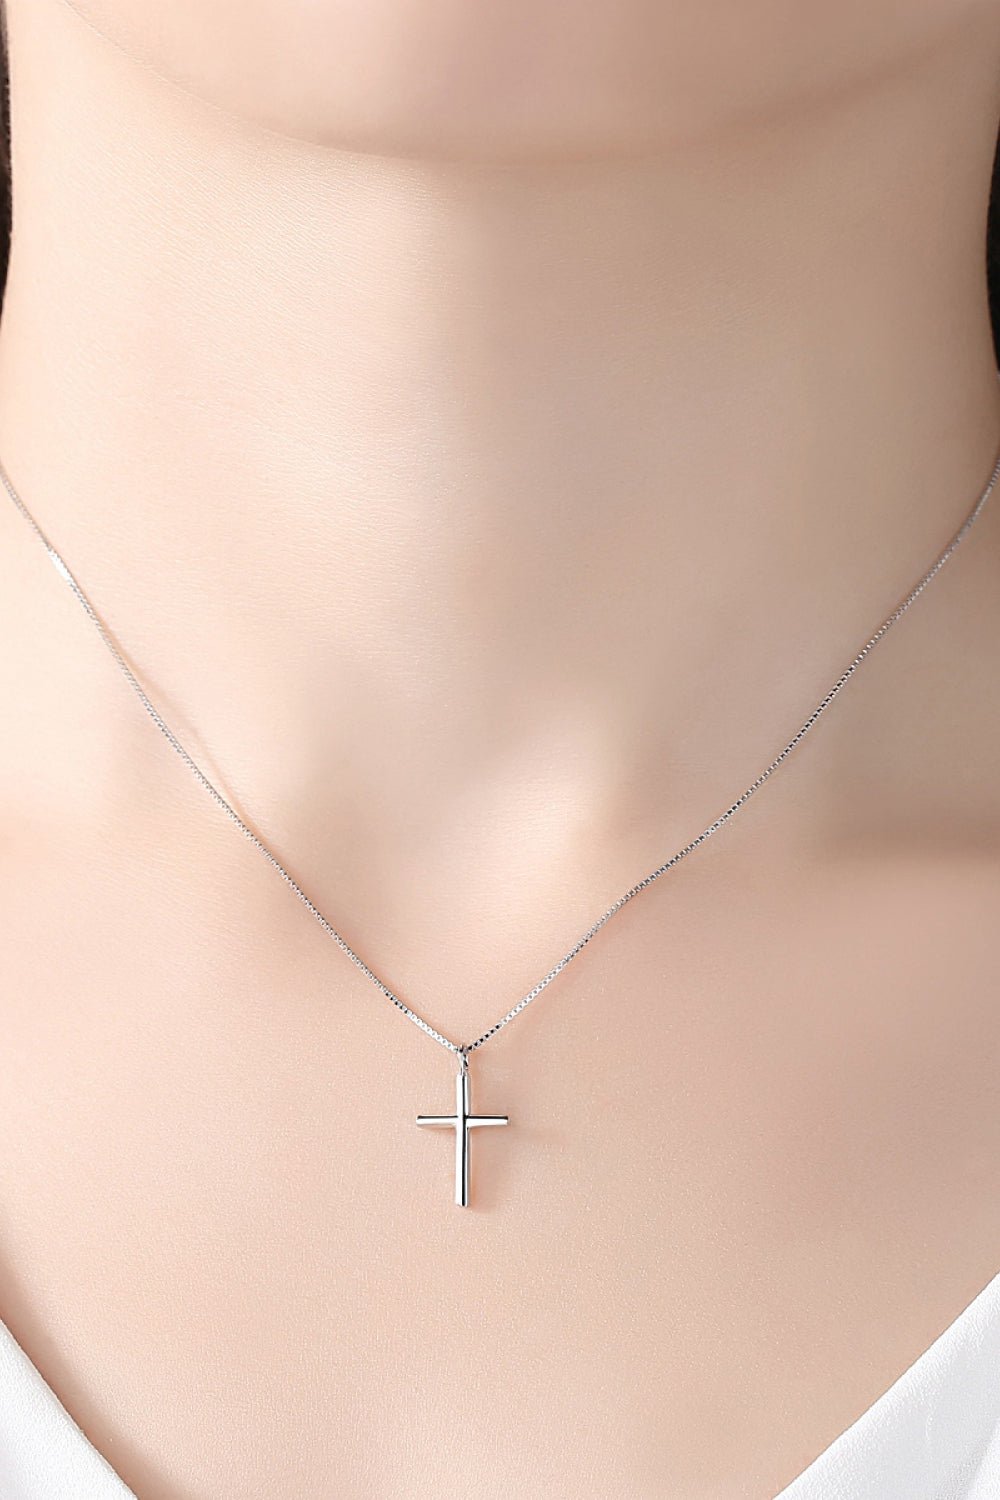 Cross Necklace - Tangerine Goddess